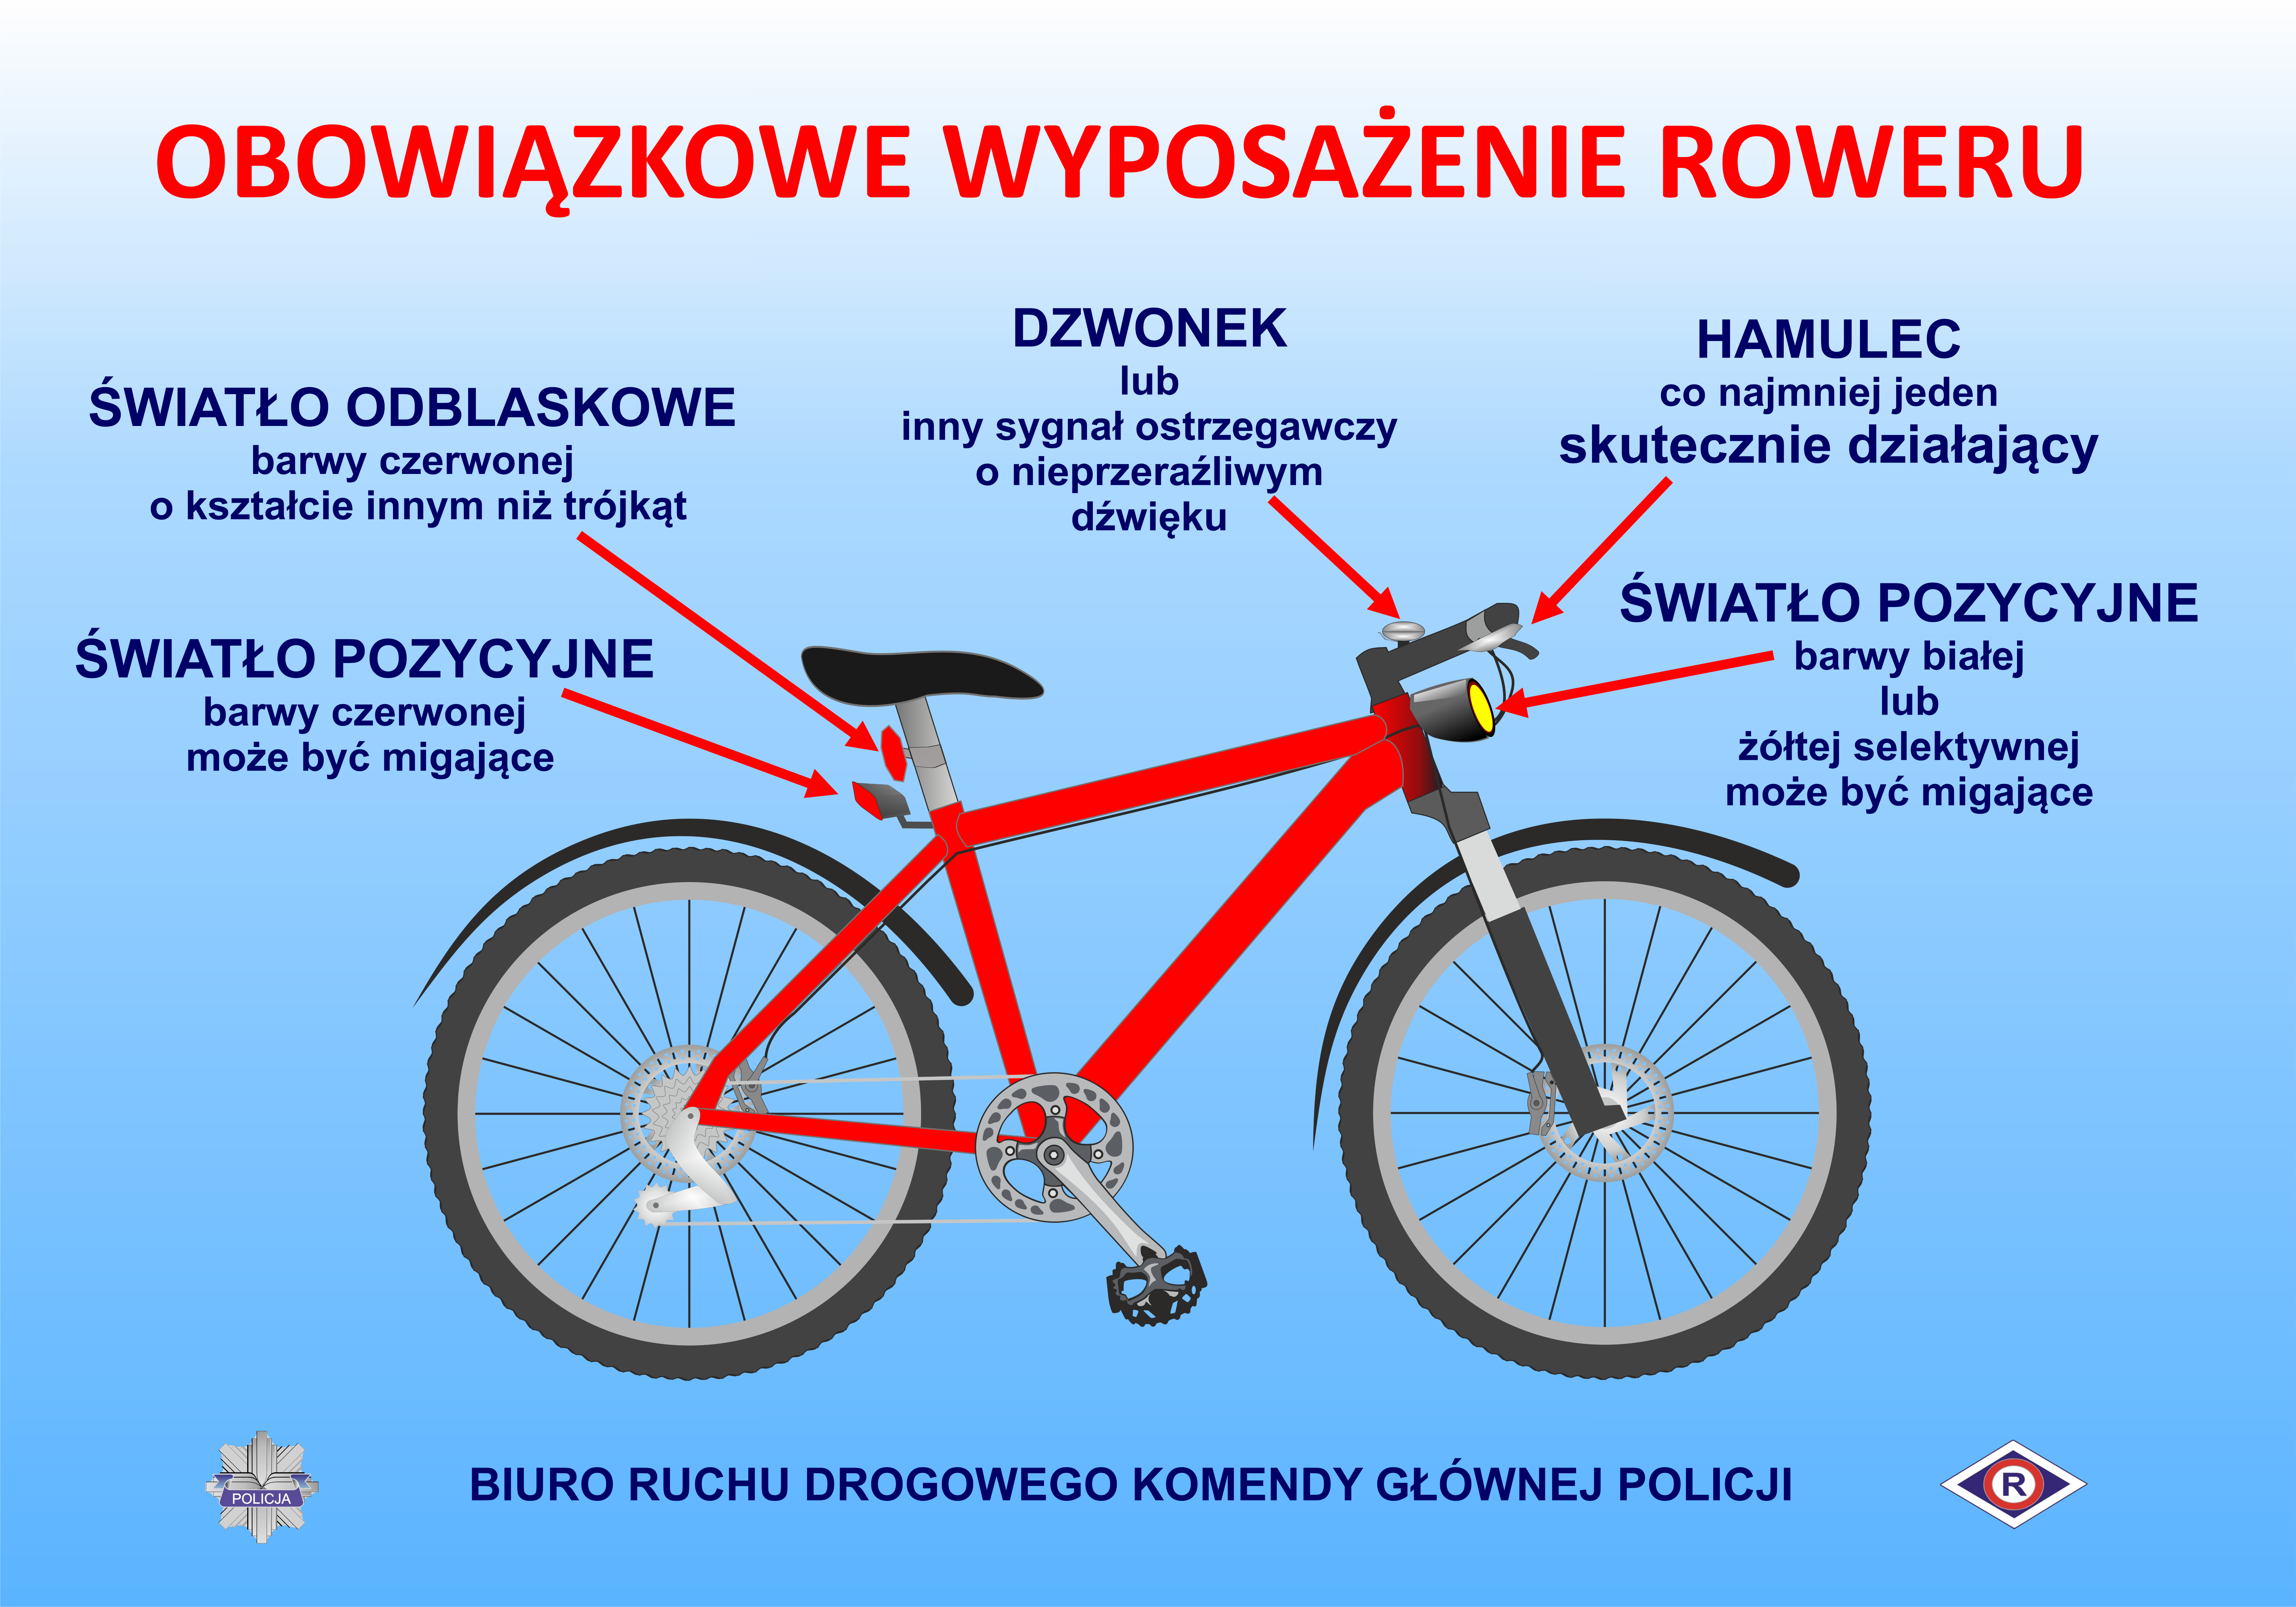 Planting trees Blow strike Obowiązkowe wyposażenie roweru - Ruch drogowy - Portal polskiej Policji